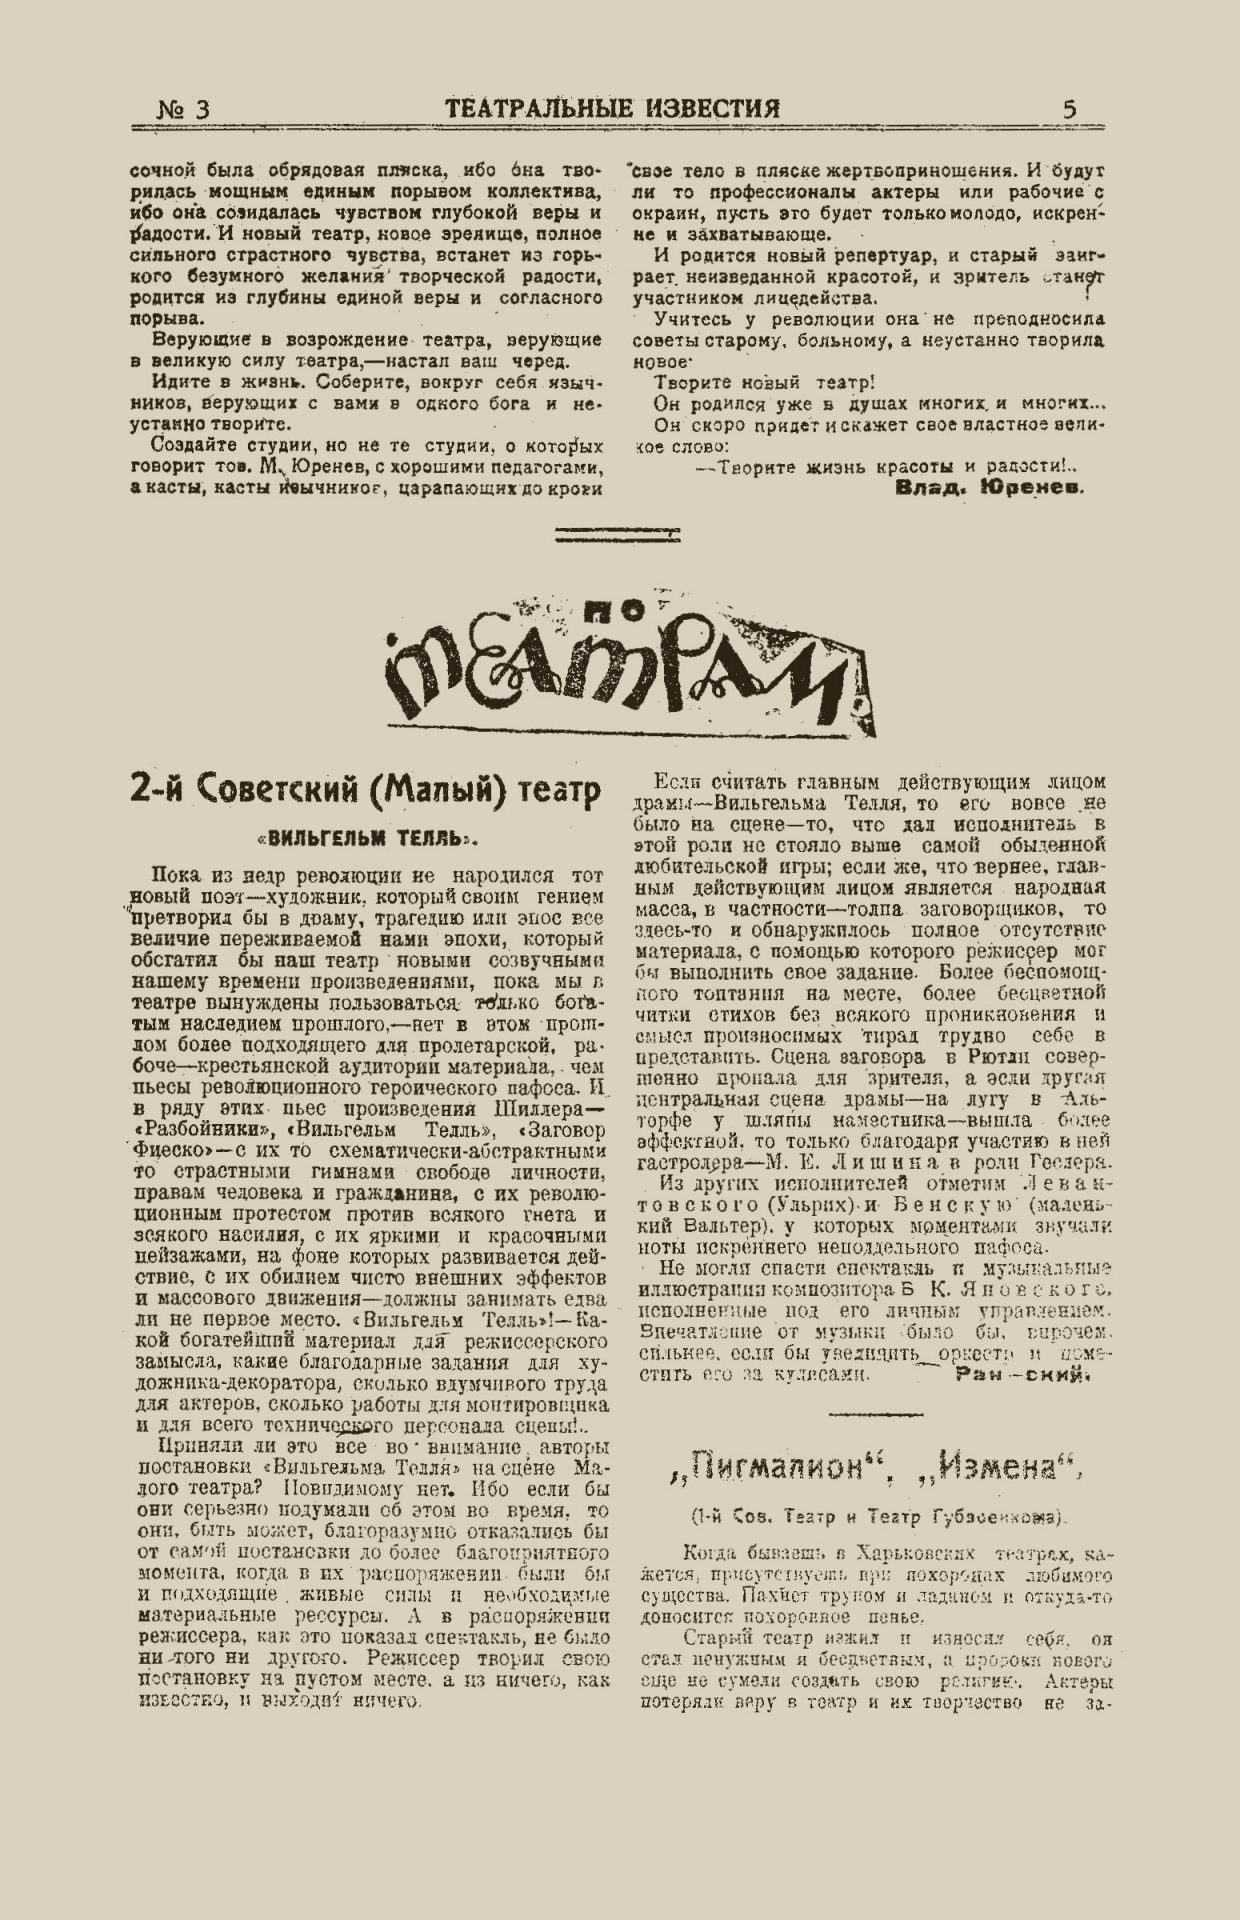 Театральные известия, 1920, №3